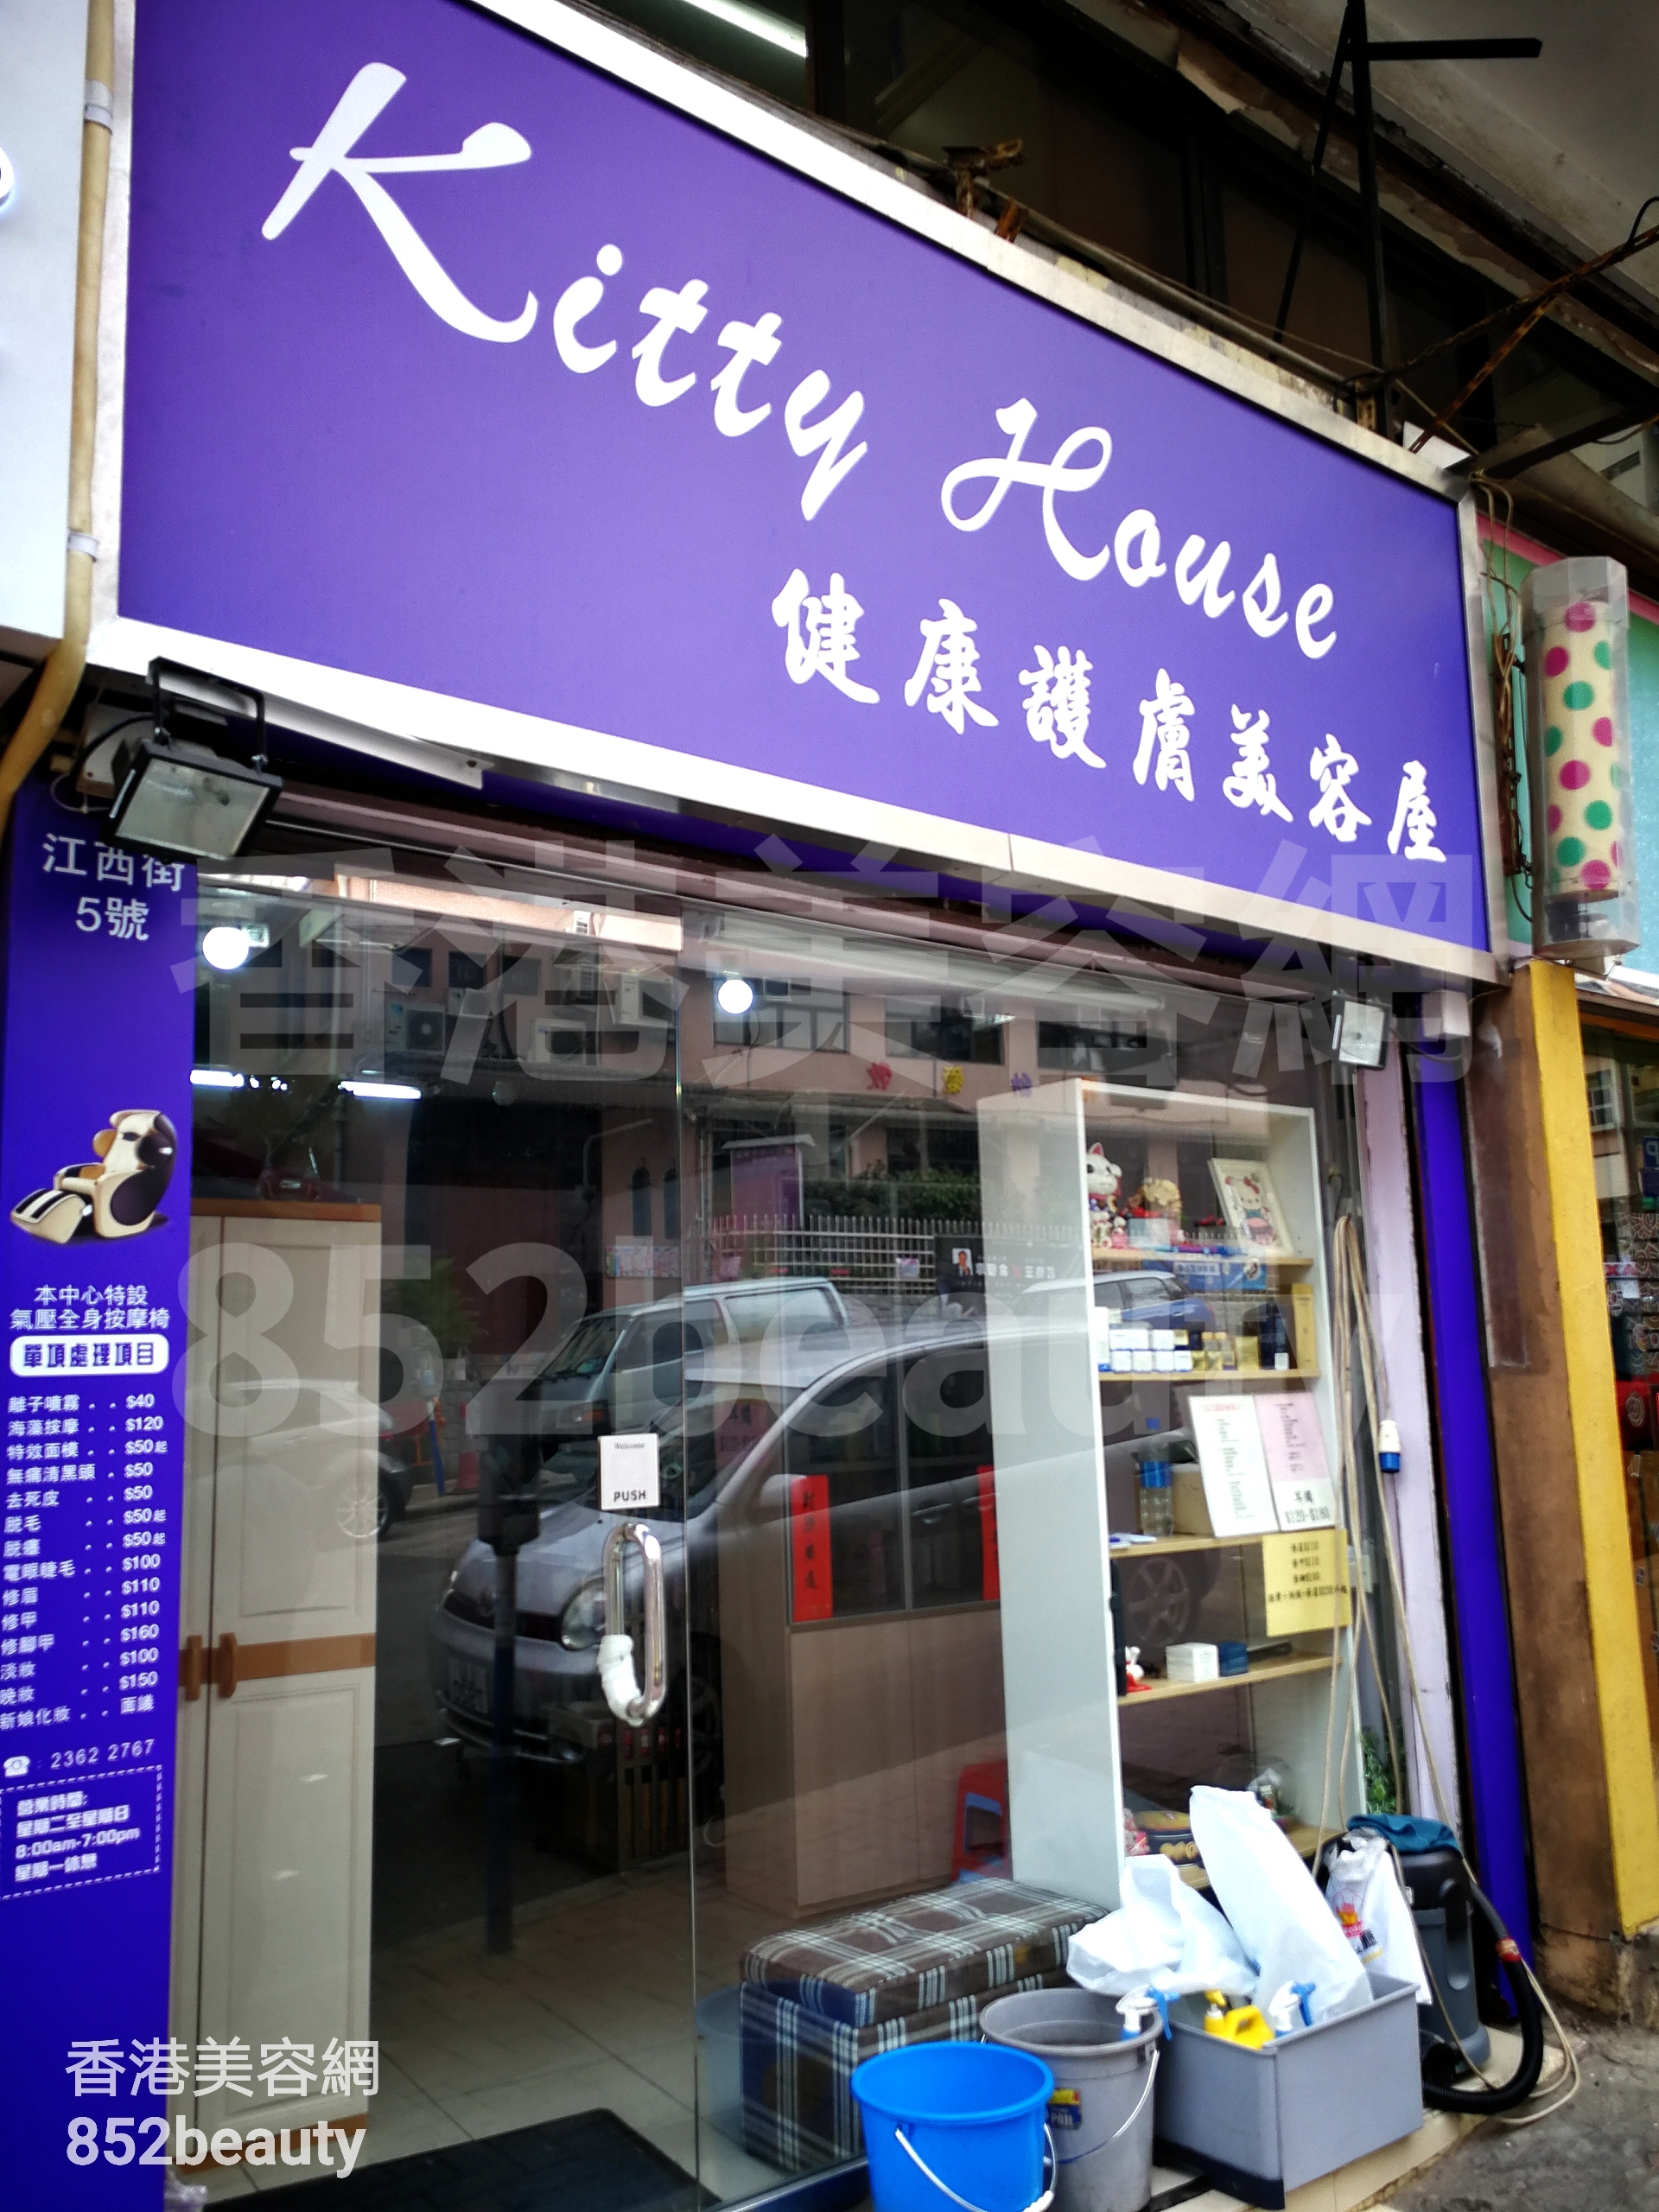 香港美容網 Hong Kong Beauty Salon 美容院 / 美容師: Kitty House 健康護膚美容屋